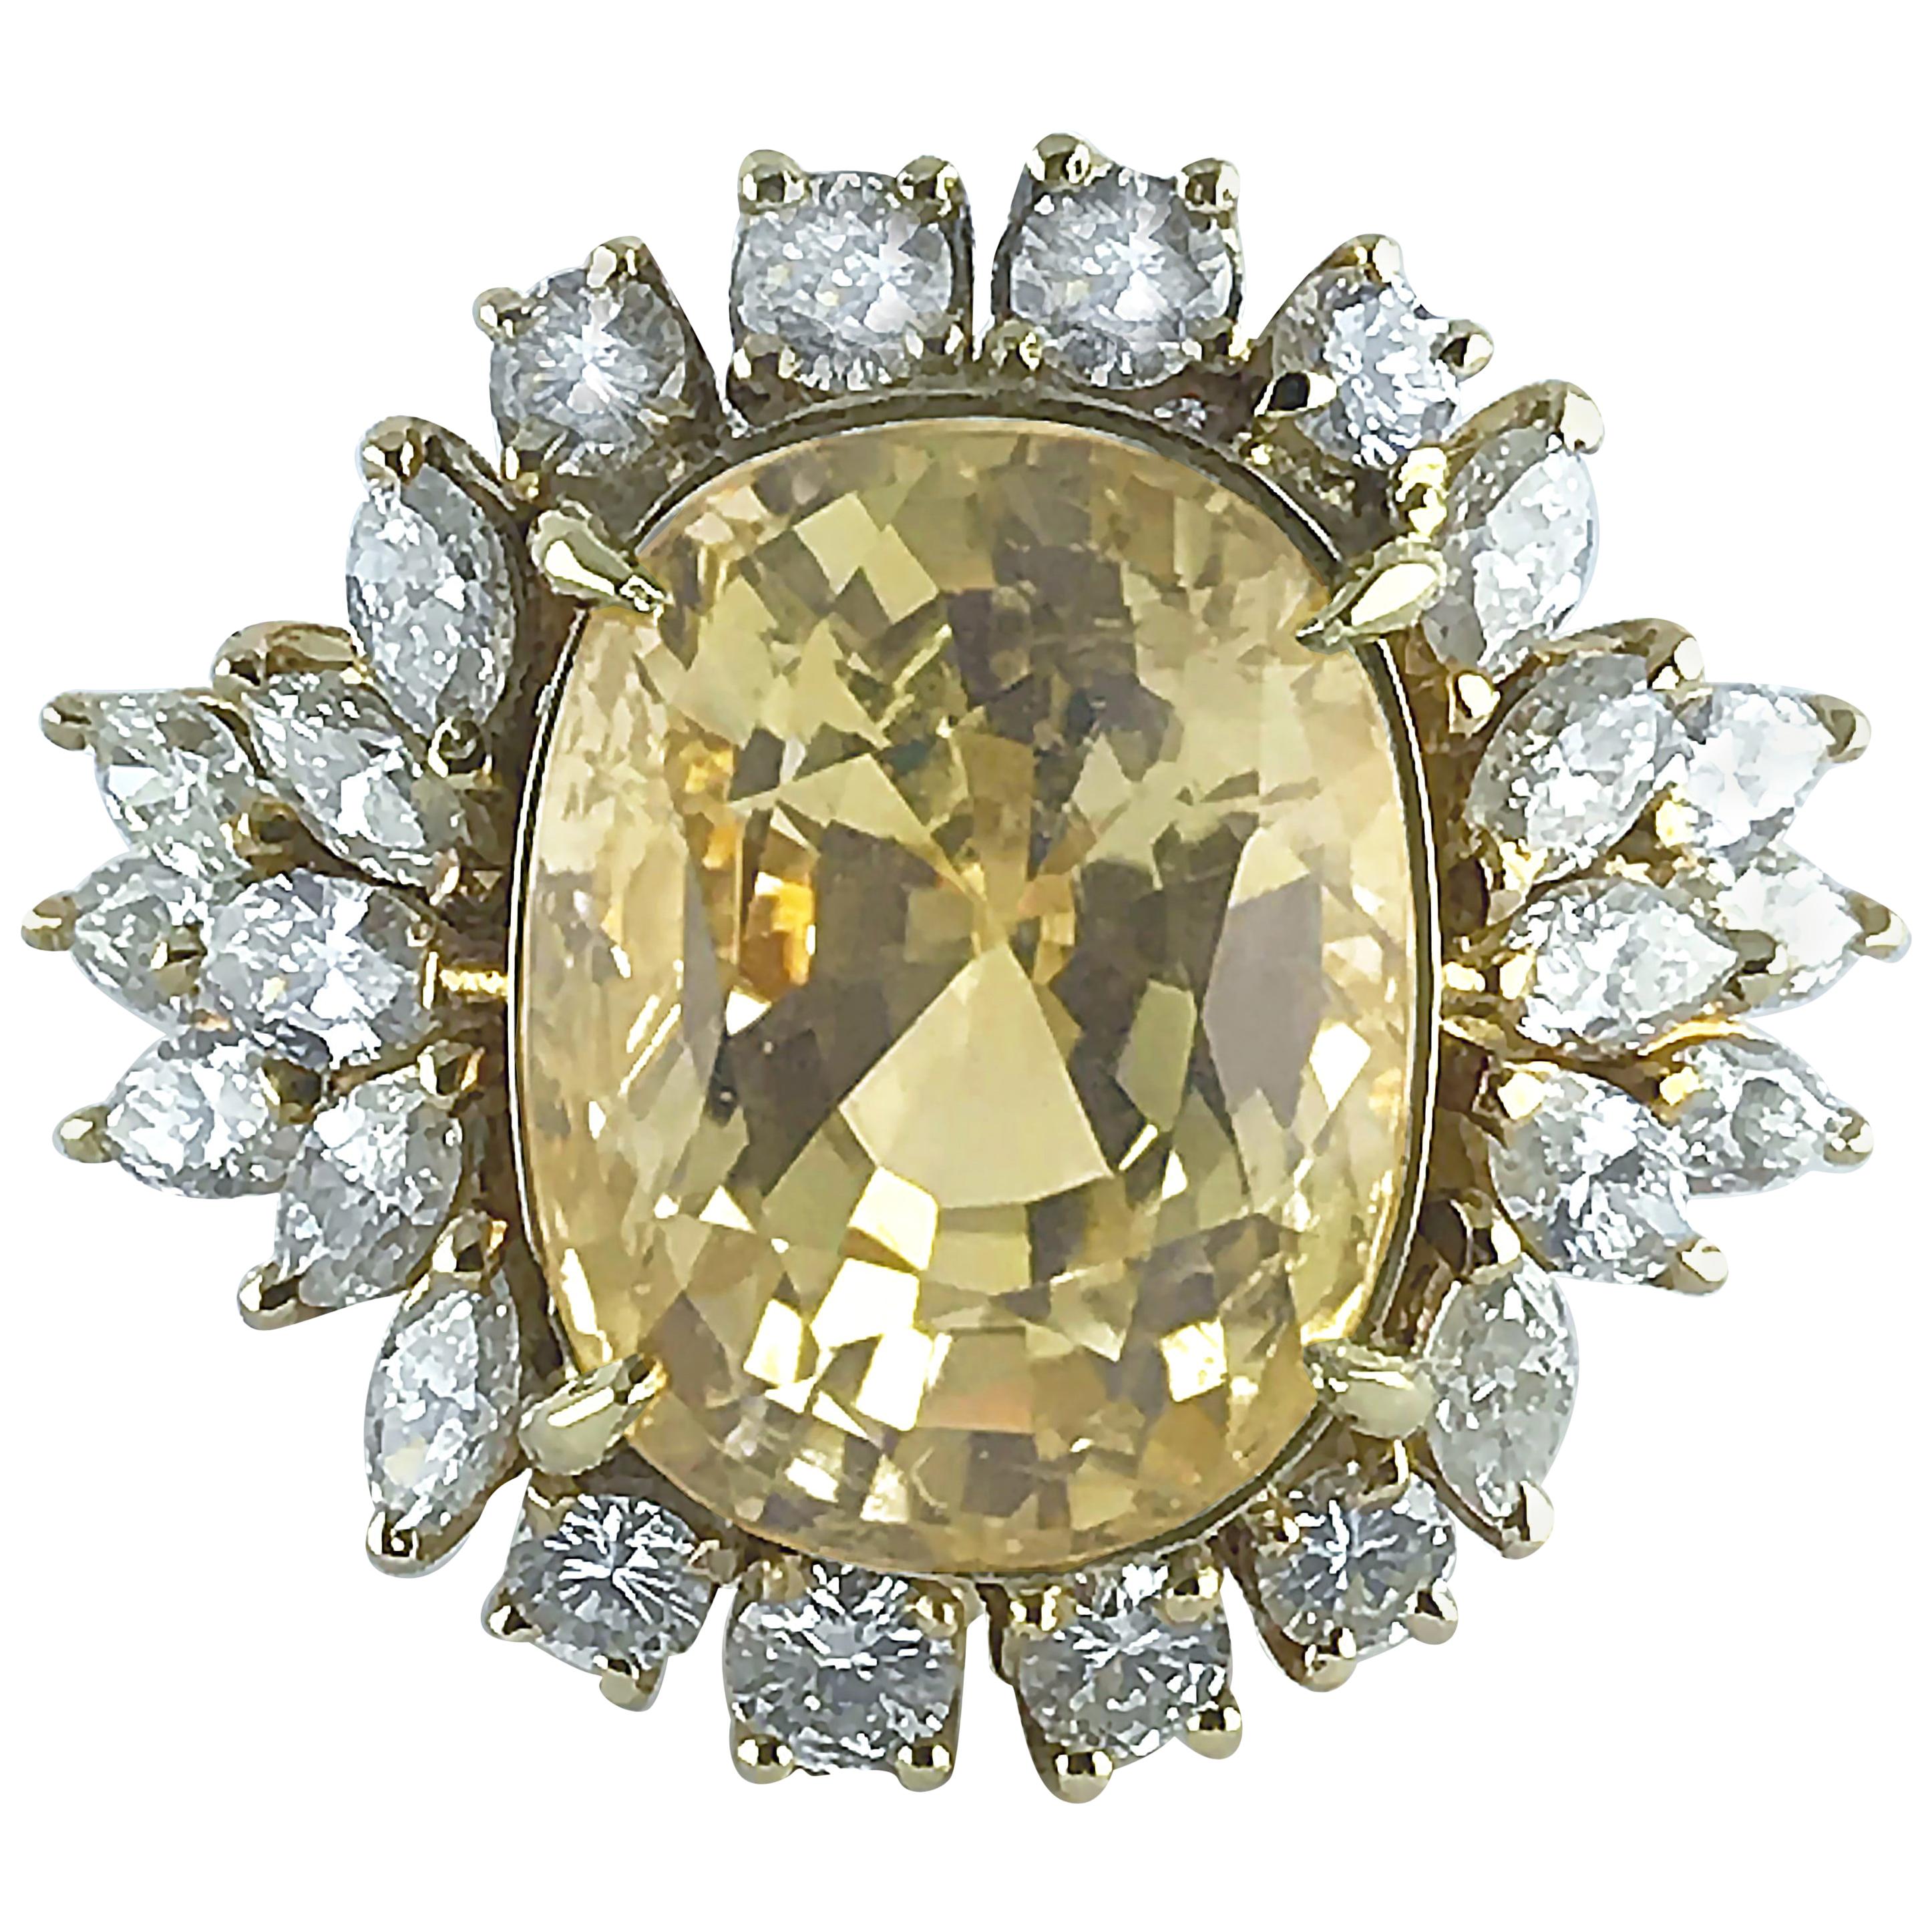 Bague en saphir jaune certifié naturel de 16,39 carats de taille coussin et diamants